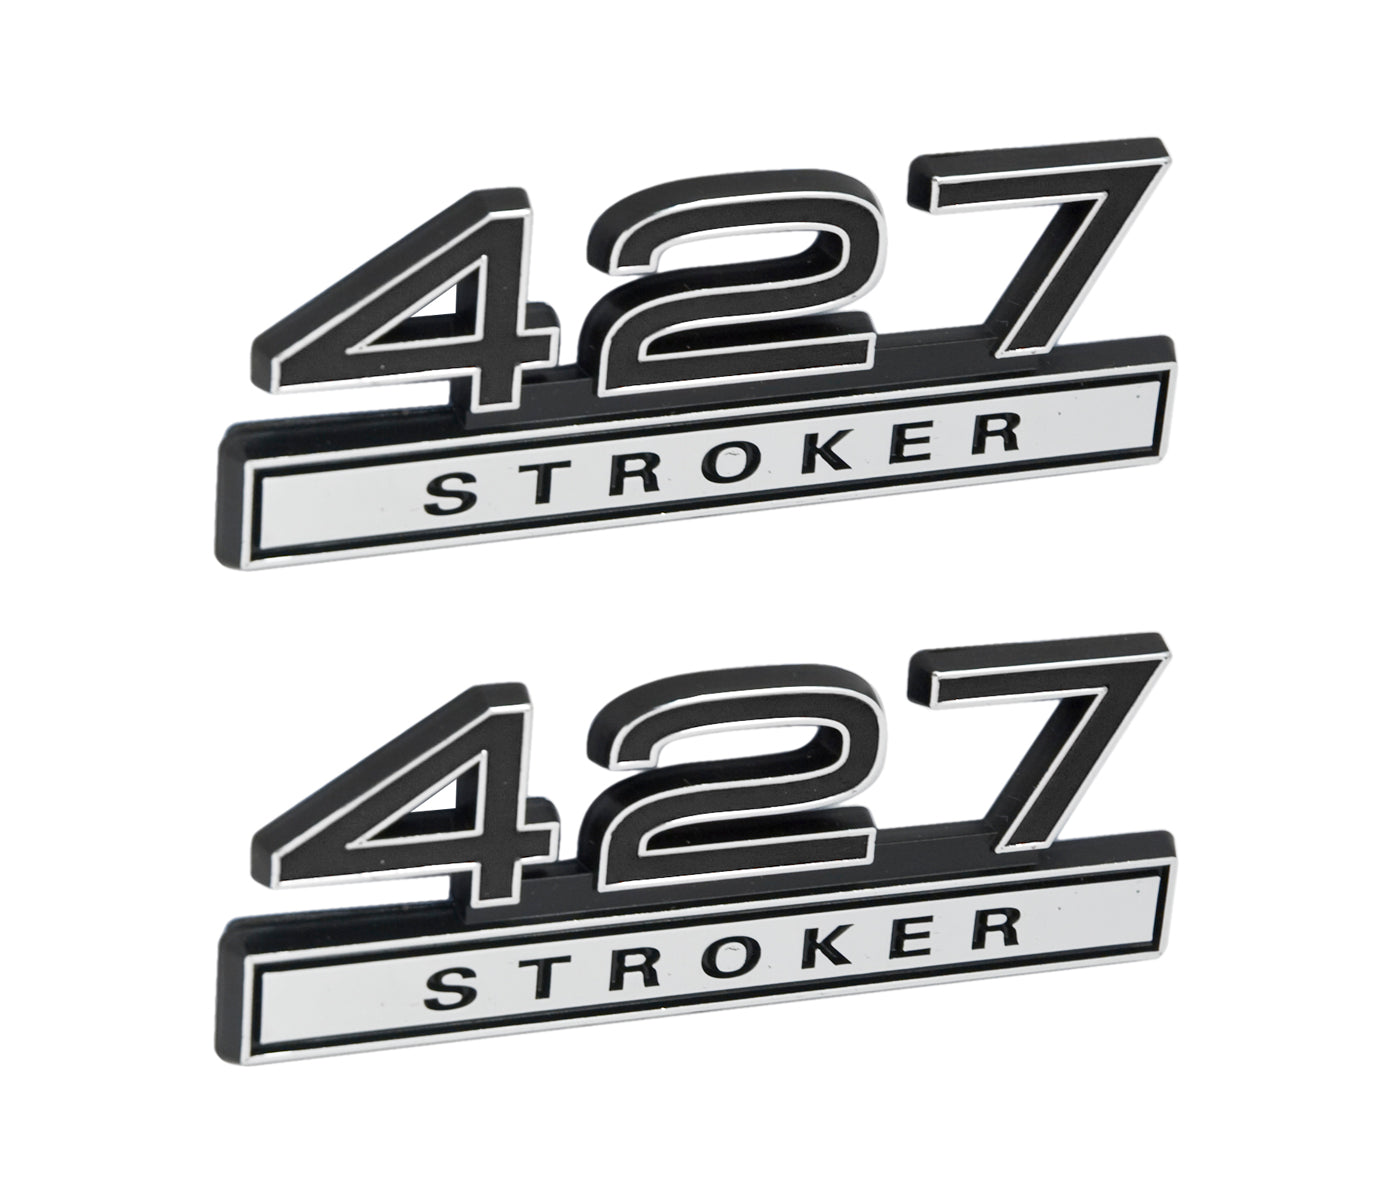 427 Stroker 7.0 Liter Engine Emblems Badges in Chrome & Black - 4" Long Pair